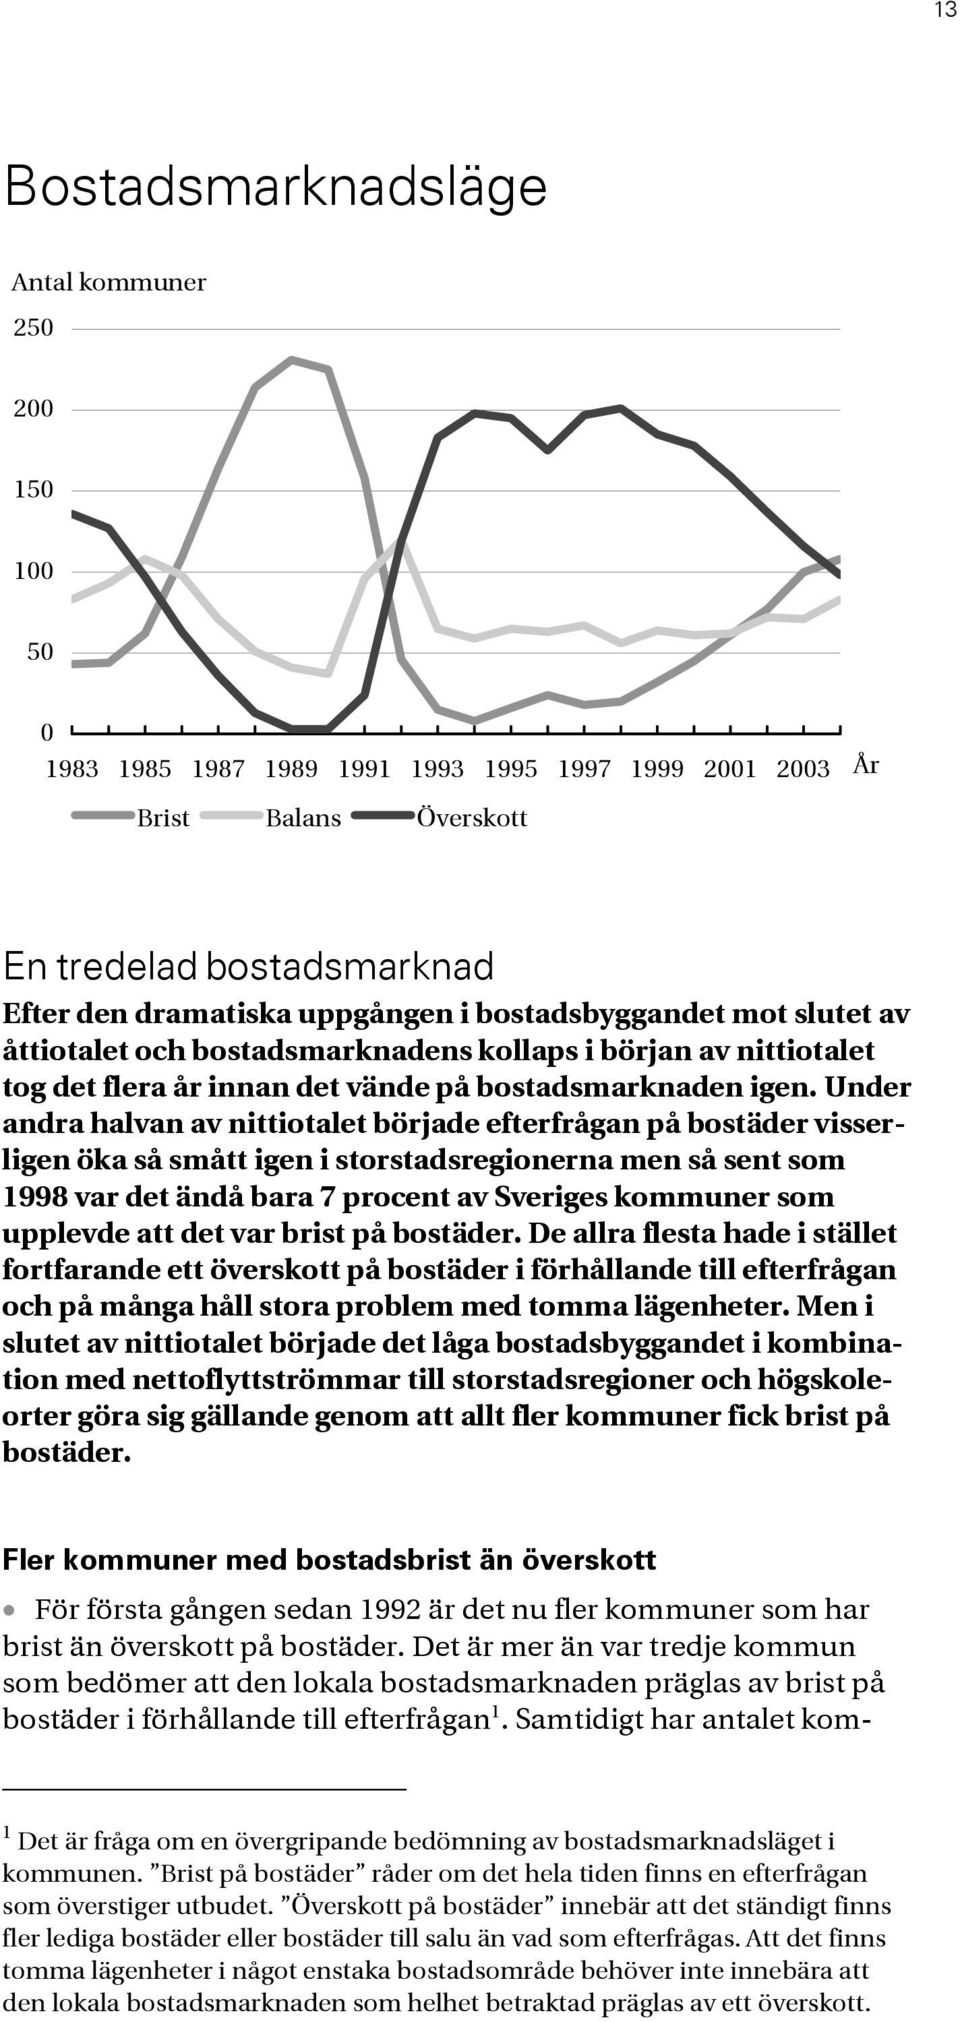 Under andra halvan av nittiotalet började efterfrågan på bostäder visserligen öka så smått igen i storstadsregionerna men så sent som 1998 var det ändå bara 7 procent av Sveriges kommuner som